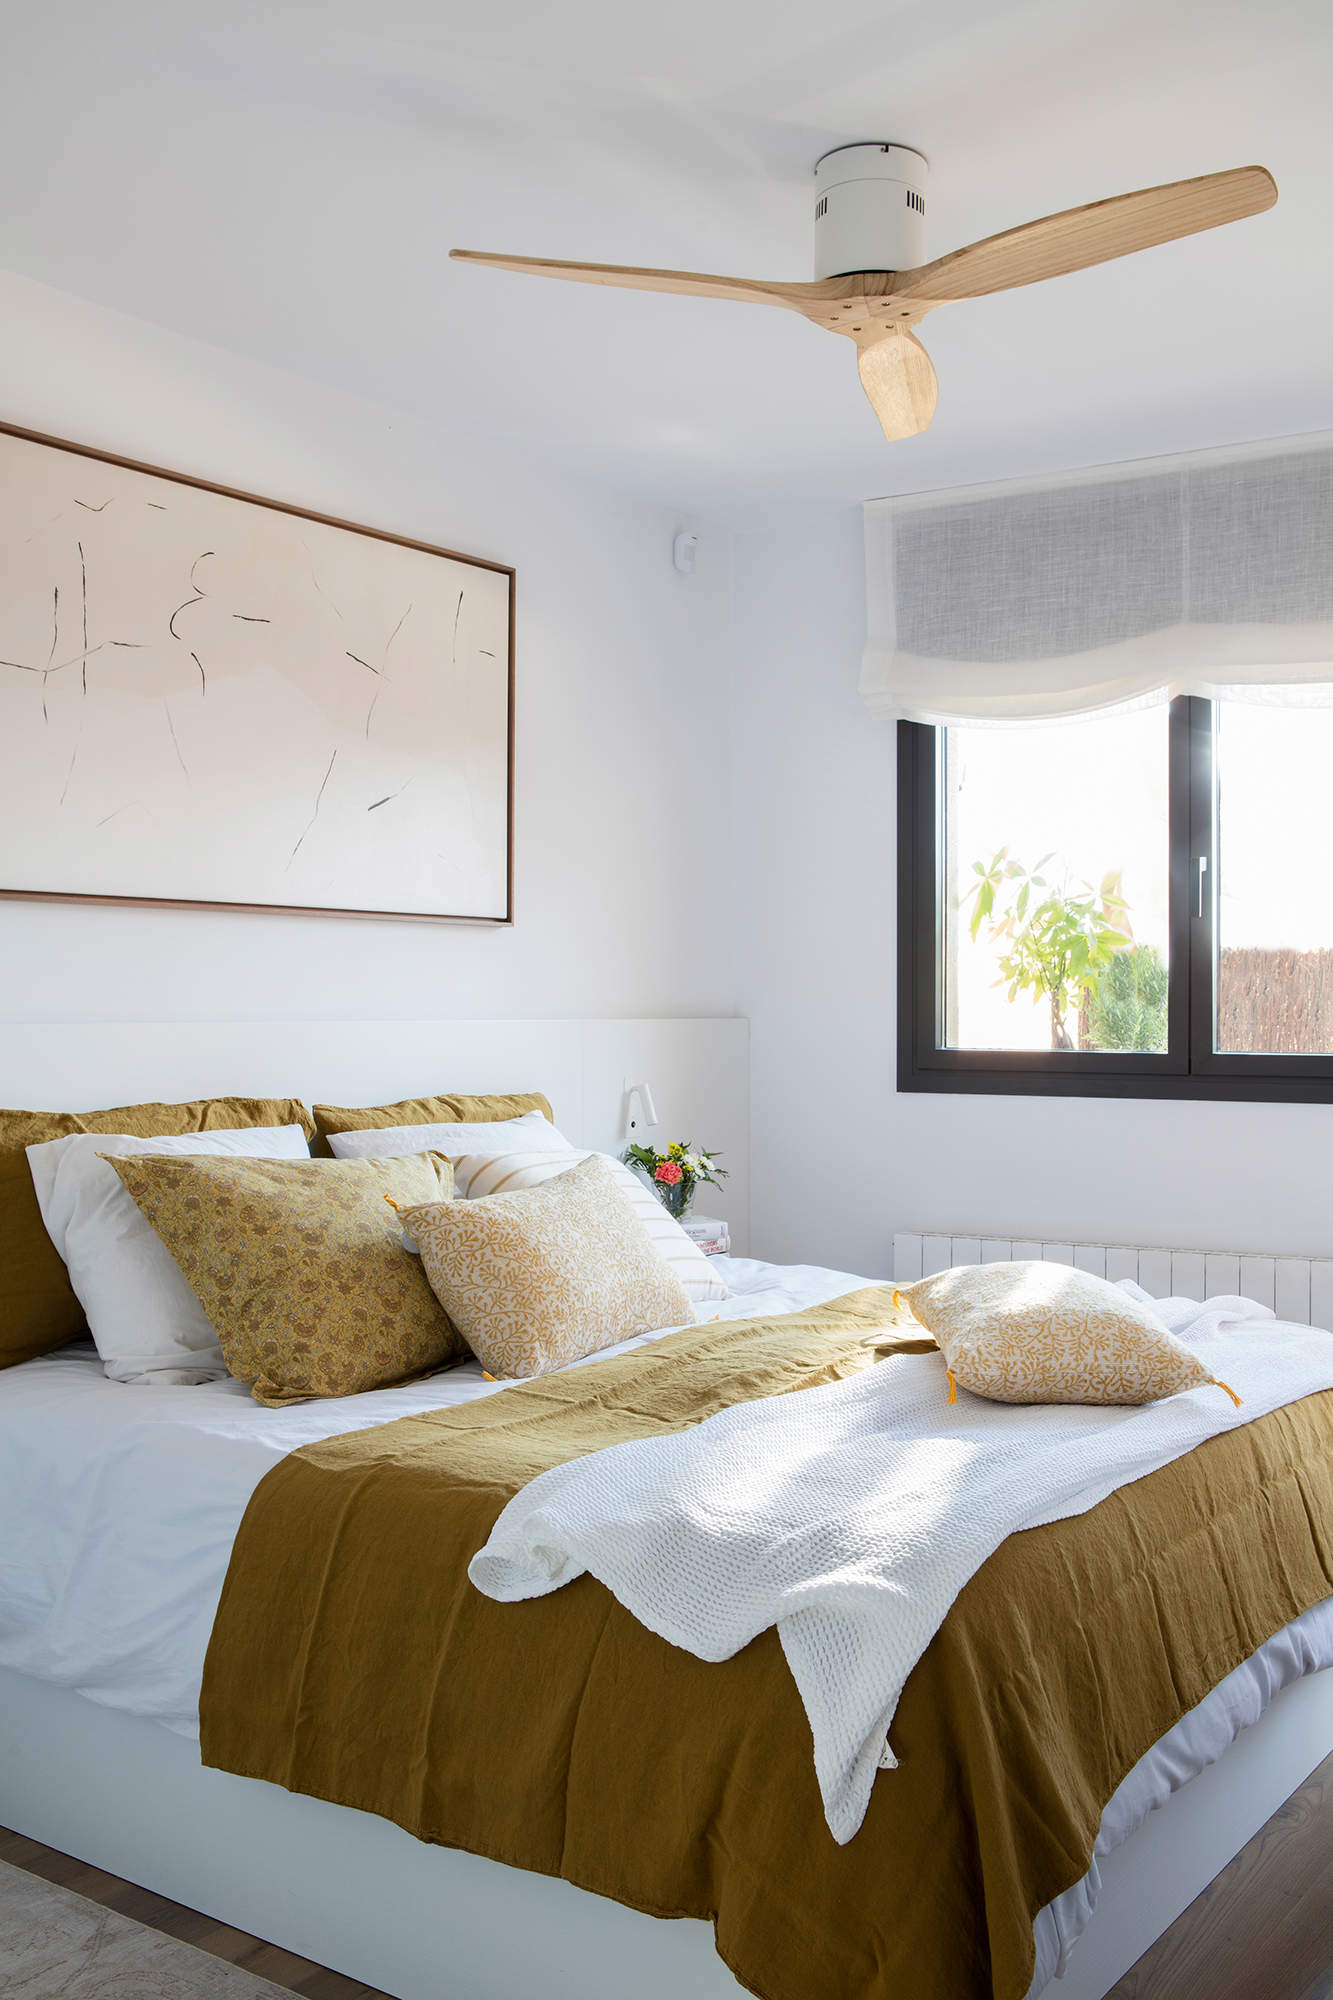 Dormitorio luminoso en el que predomina el color blanco en la decoración.